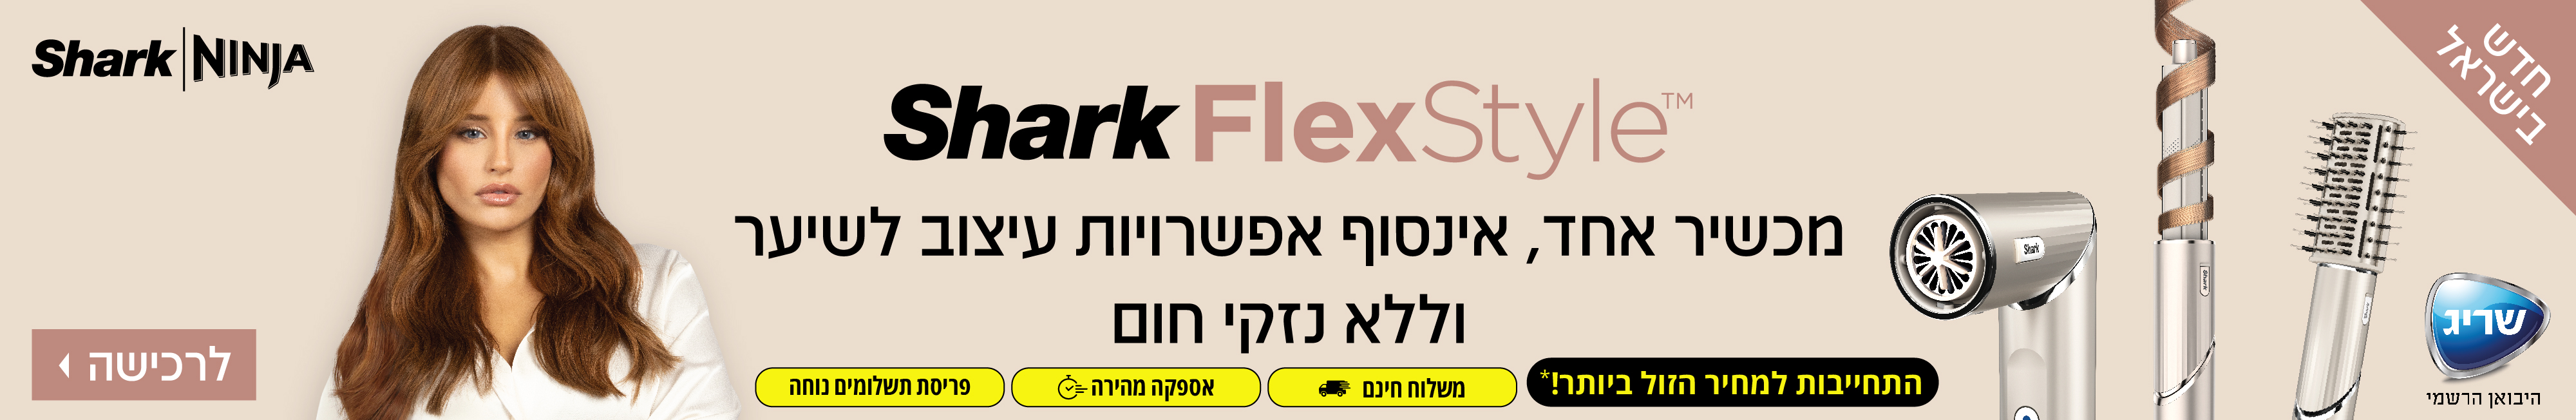 חדש בישראל! Shark FlexStyle מכשיר אחד, אינסוף אפשרויות עיצוב לשיער ללא נזקי חום .התחייבות למחיר הזול ביותר! אספקה מהירה, פריסת תשלומים נוחה ומשלוח חינם.